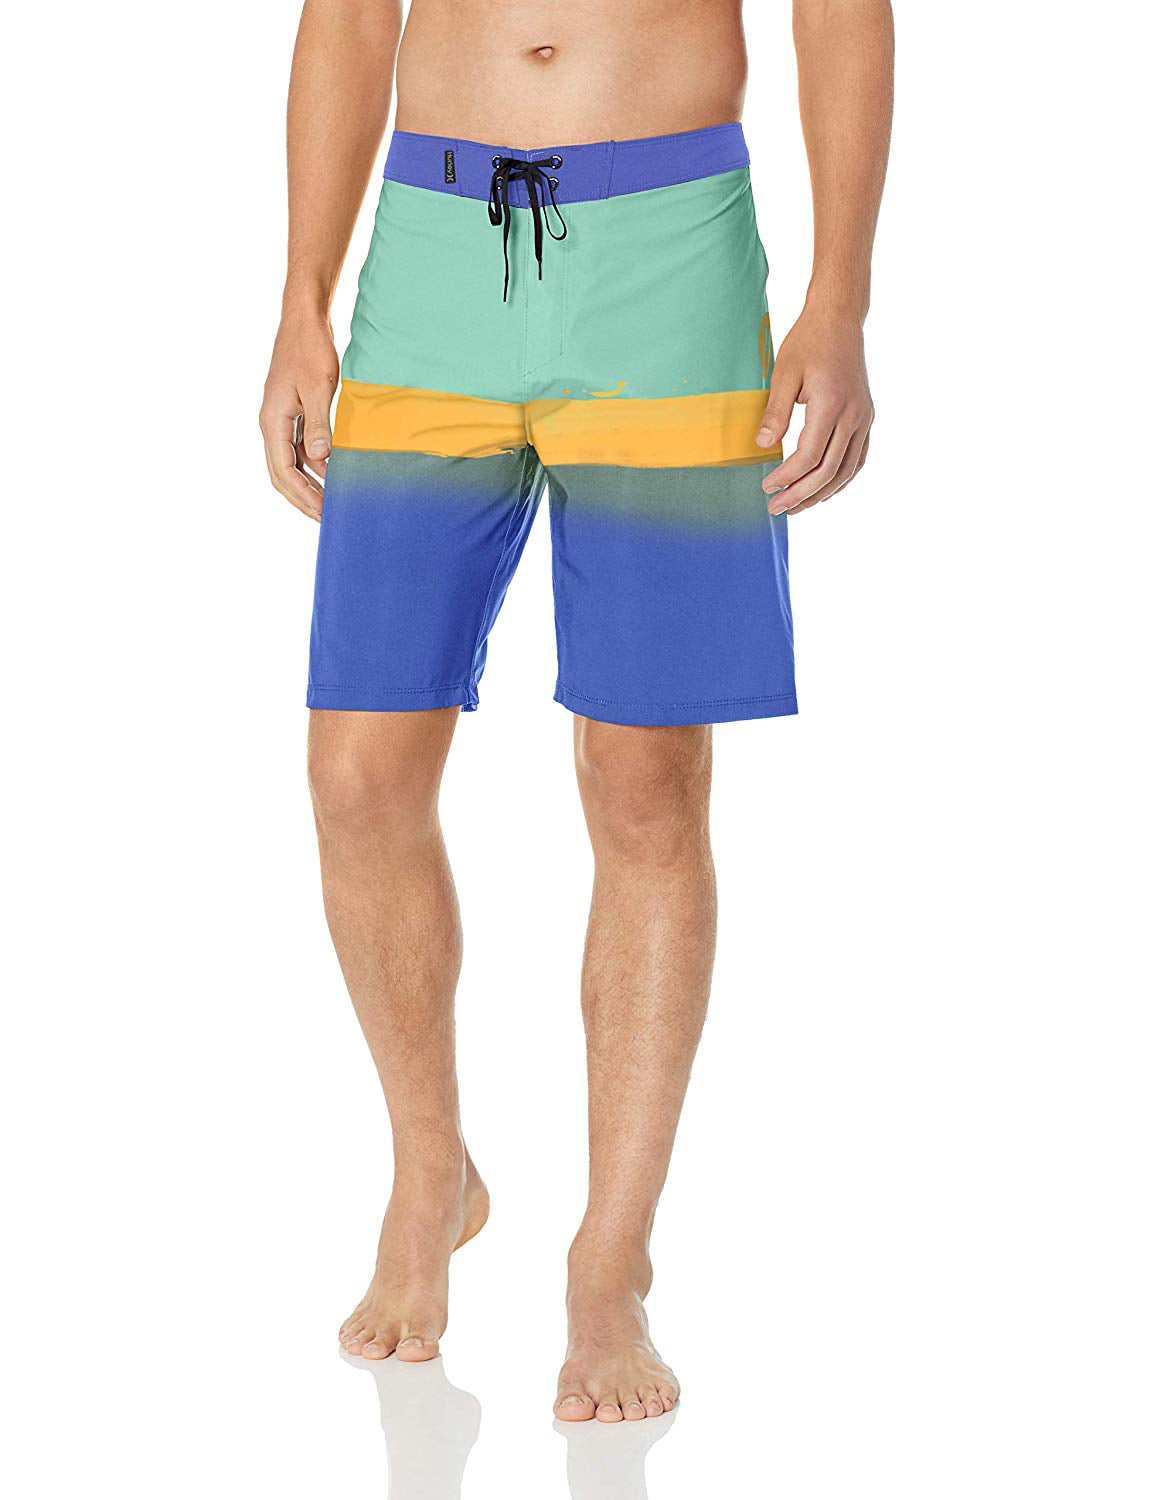 Hurley Phantom Gym Shorts Homme beachshorts Spandex Surf Pantalon Short Nautique 3110 